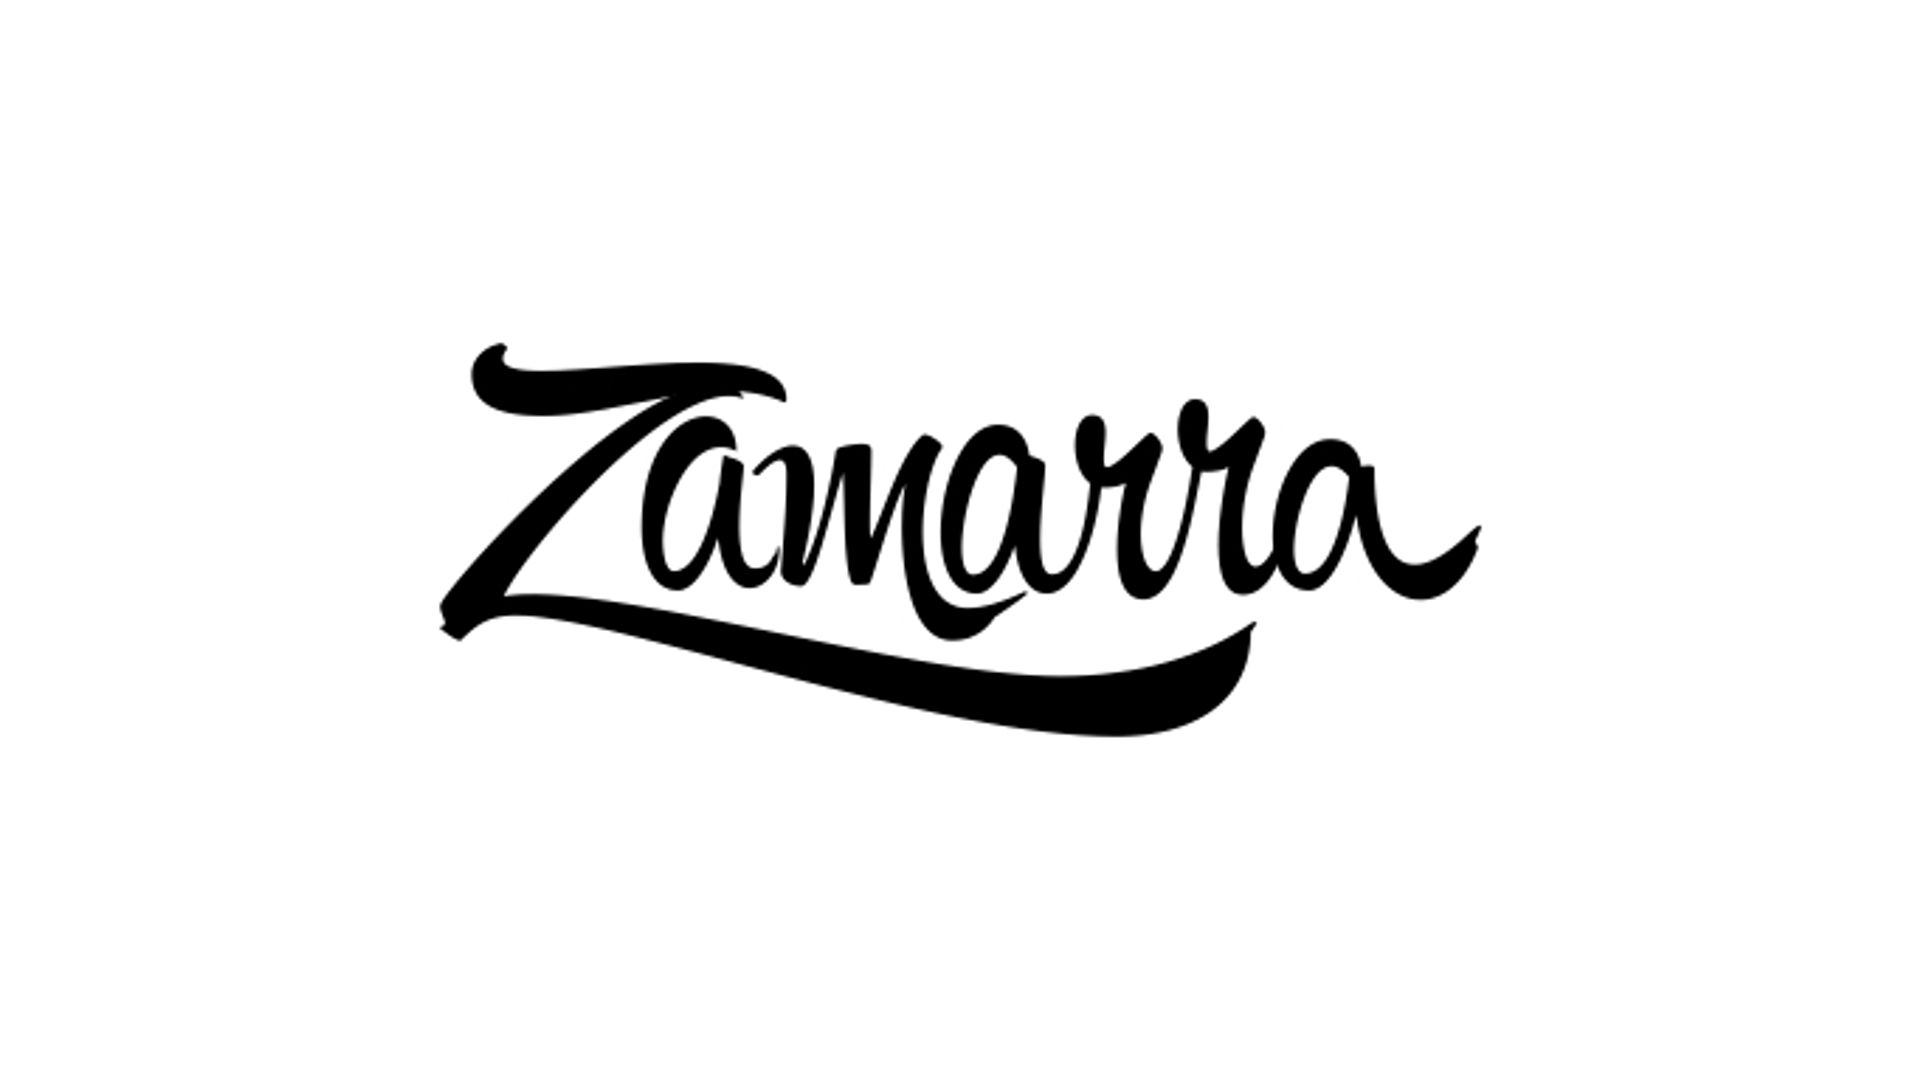 Zamarra logo